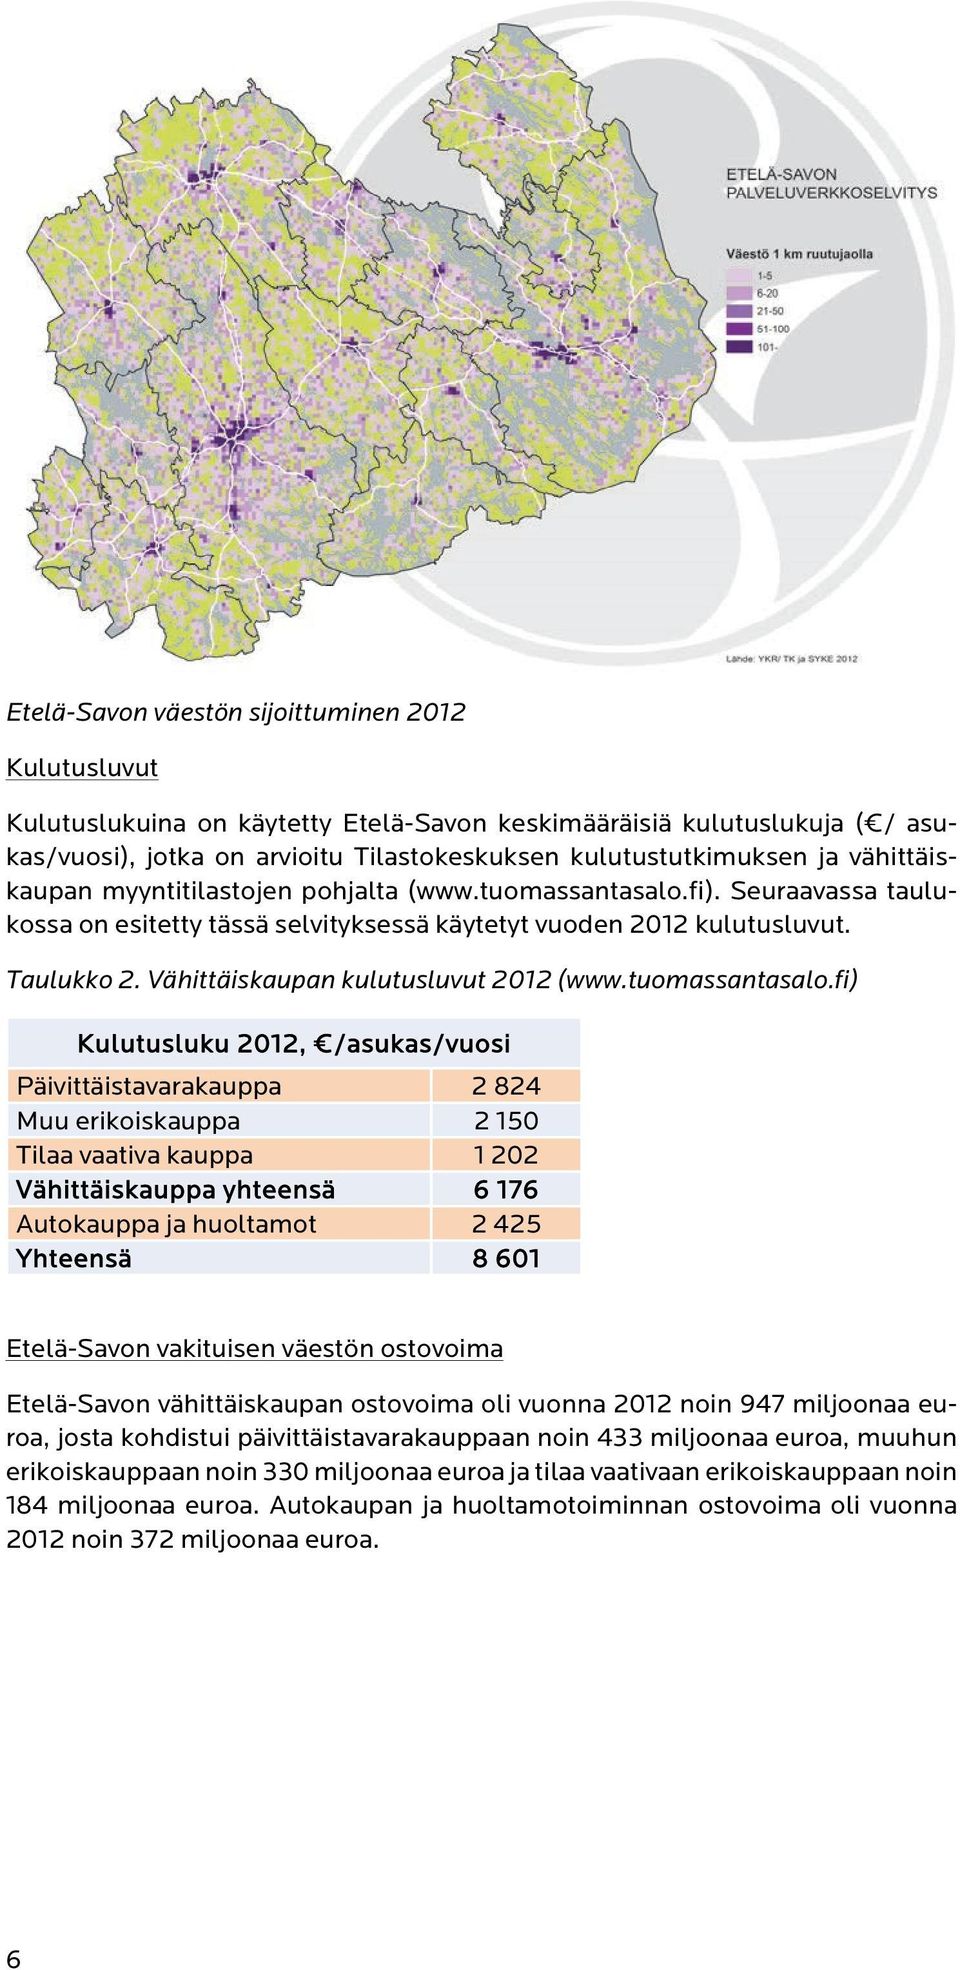 Vähittäiskaupan kulutusluvut 2012 (www.tuomassantasalo.